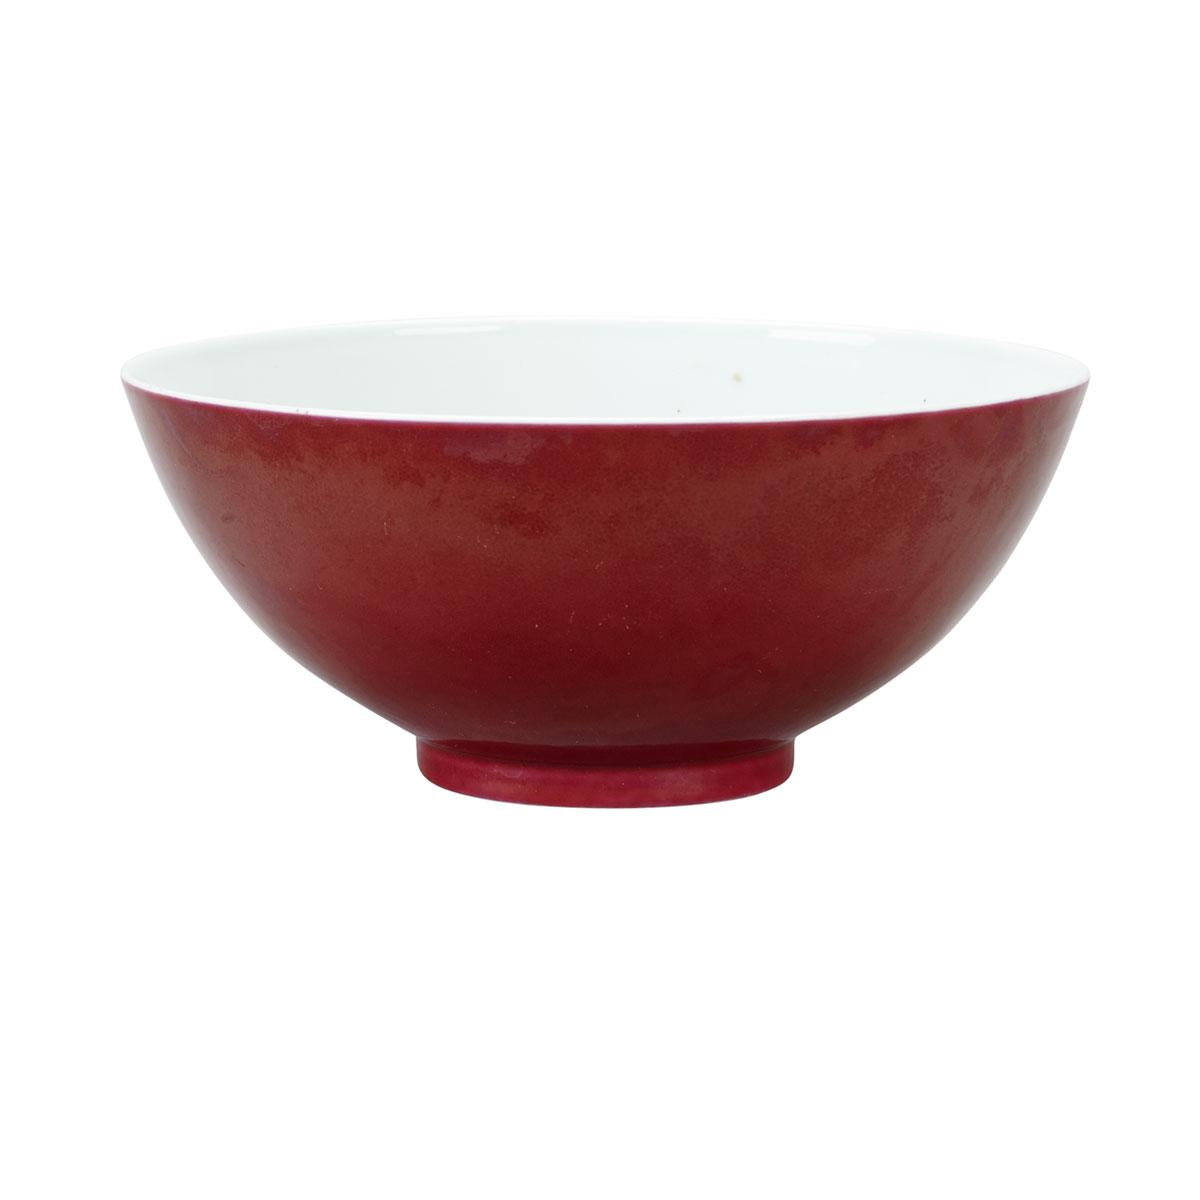 Copper Red Bowl, Guangxu Mark and Period (1875-1908)